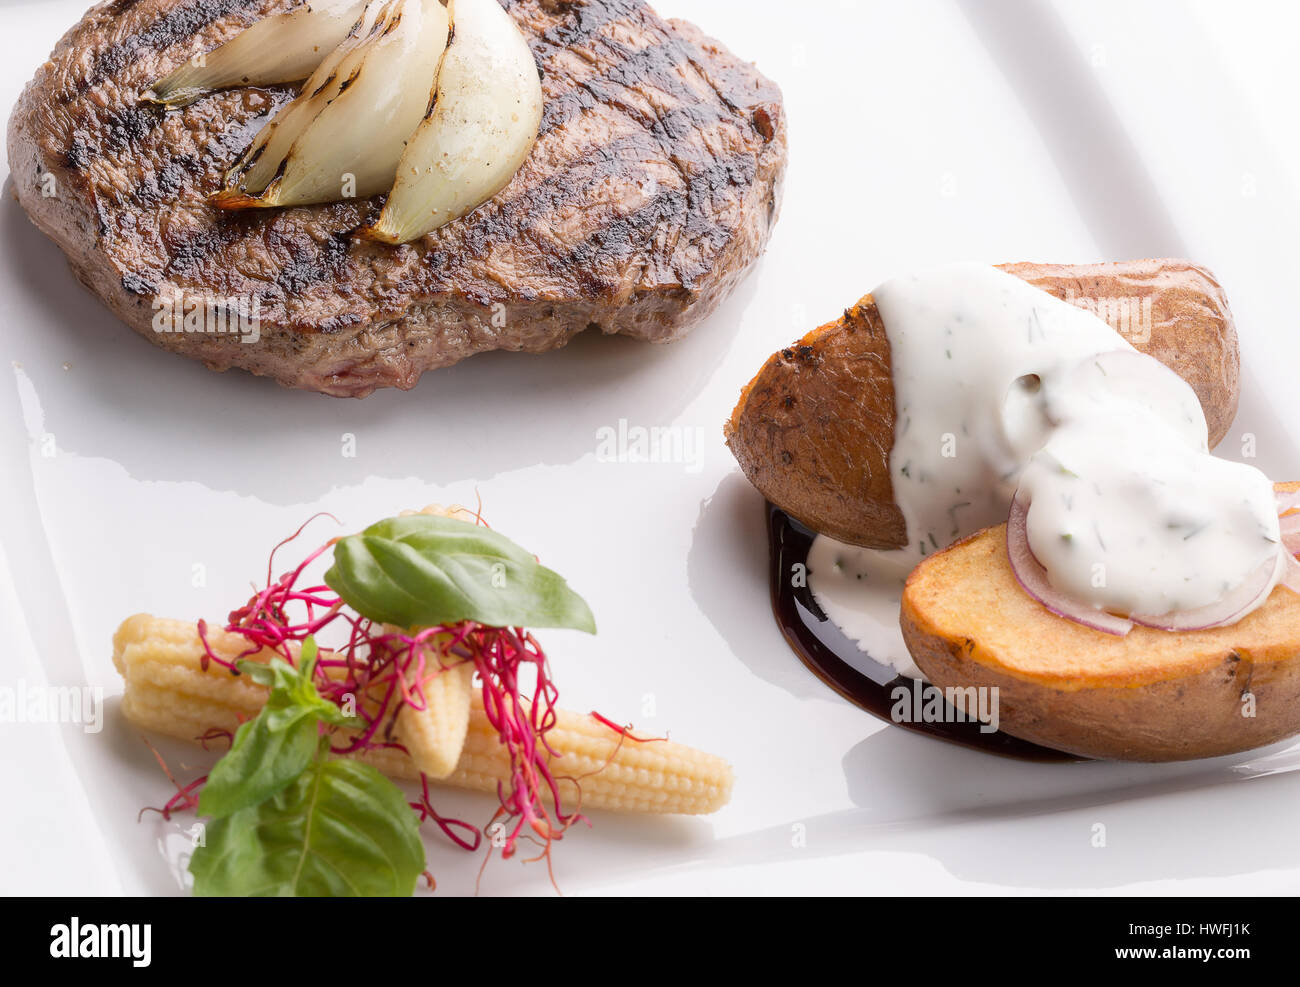 Fleisch-Steak mit Bratkartoffeln mit Sauce Tartar. Stockfoto